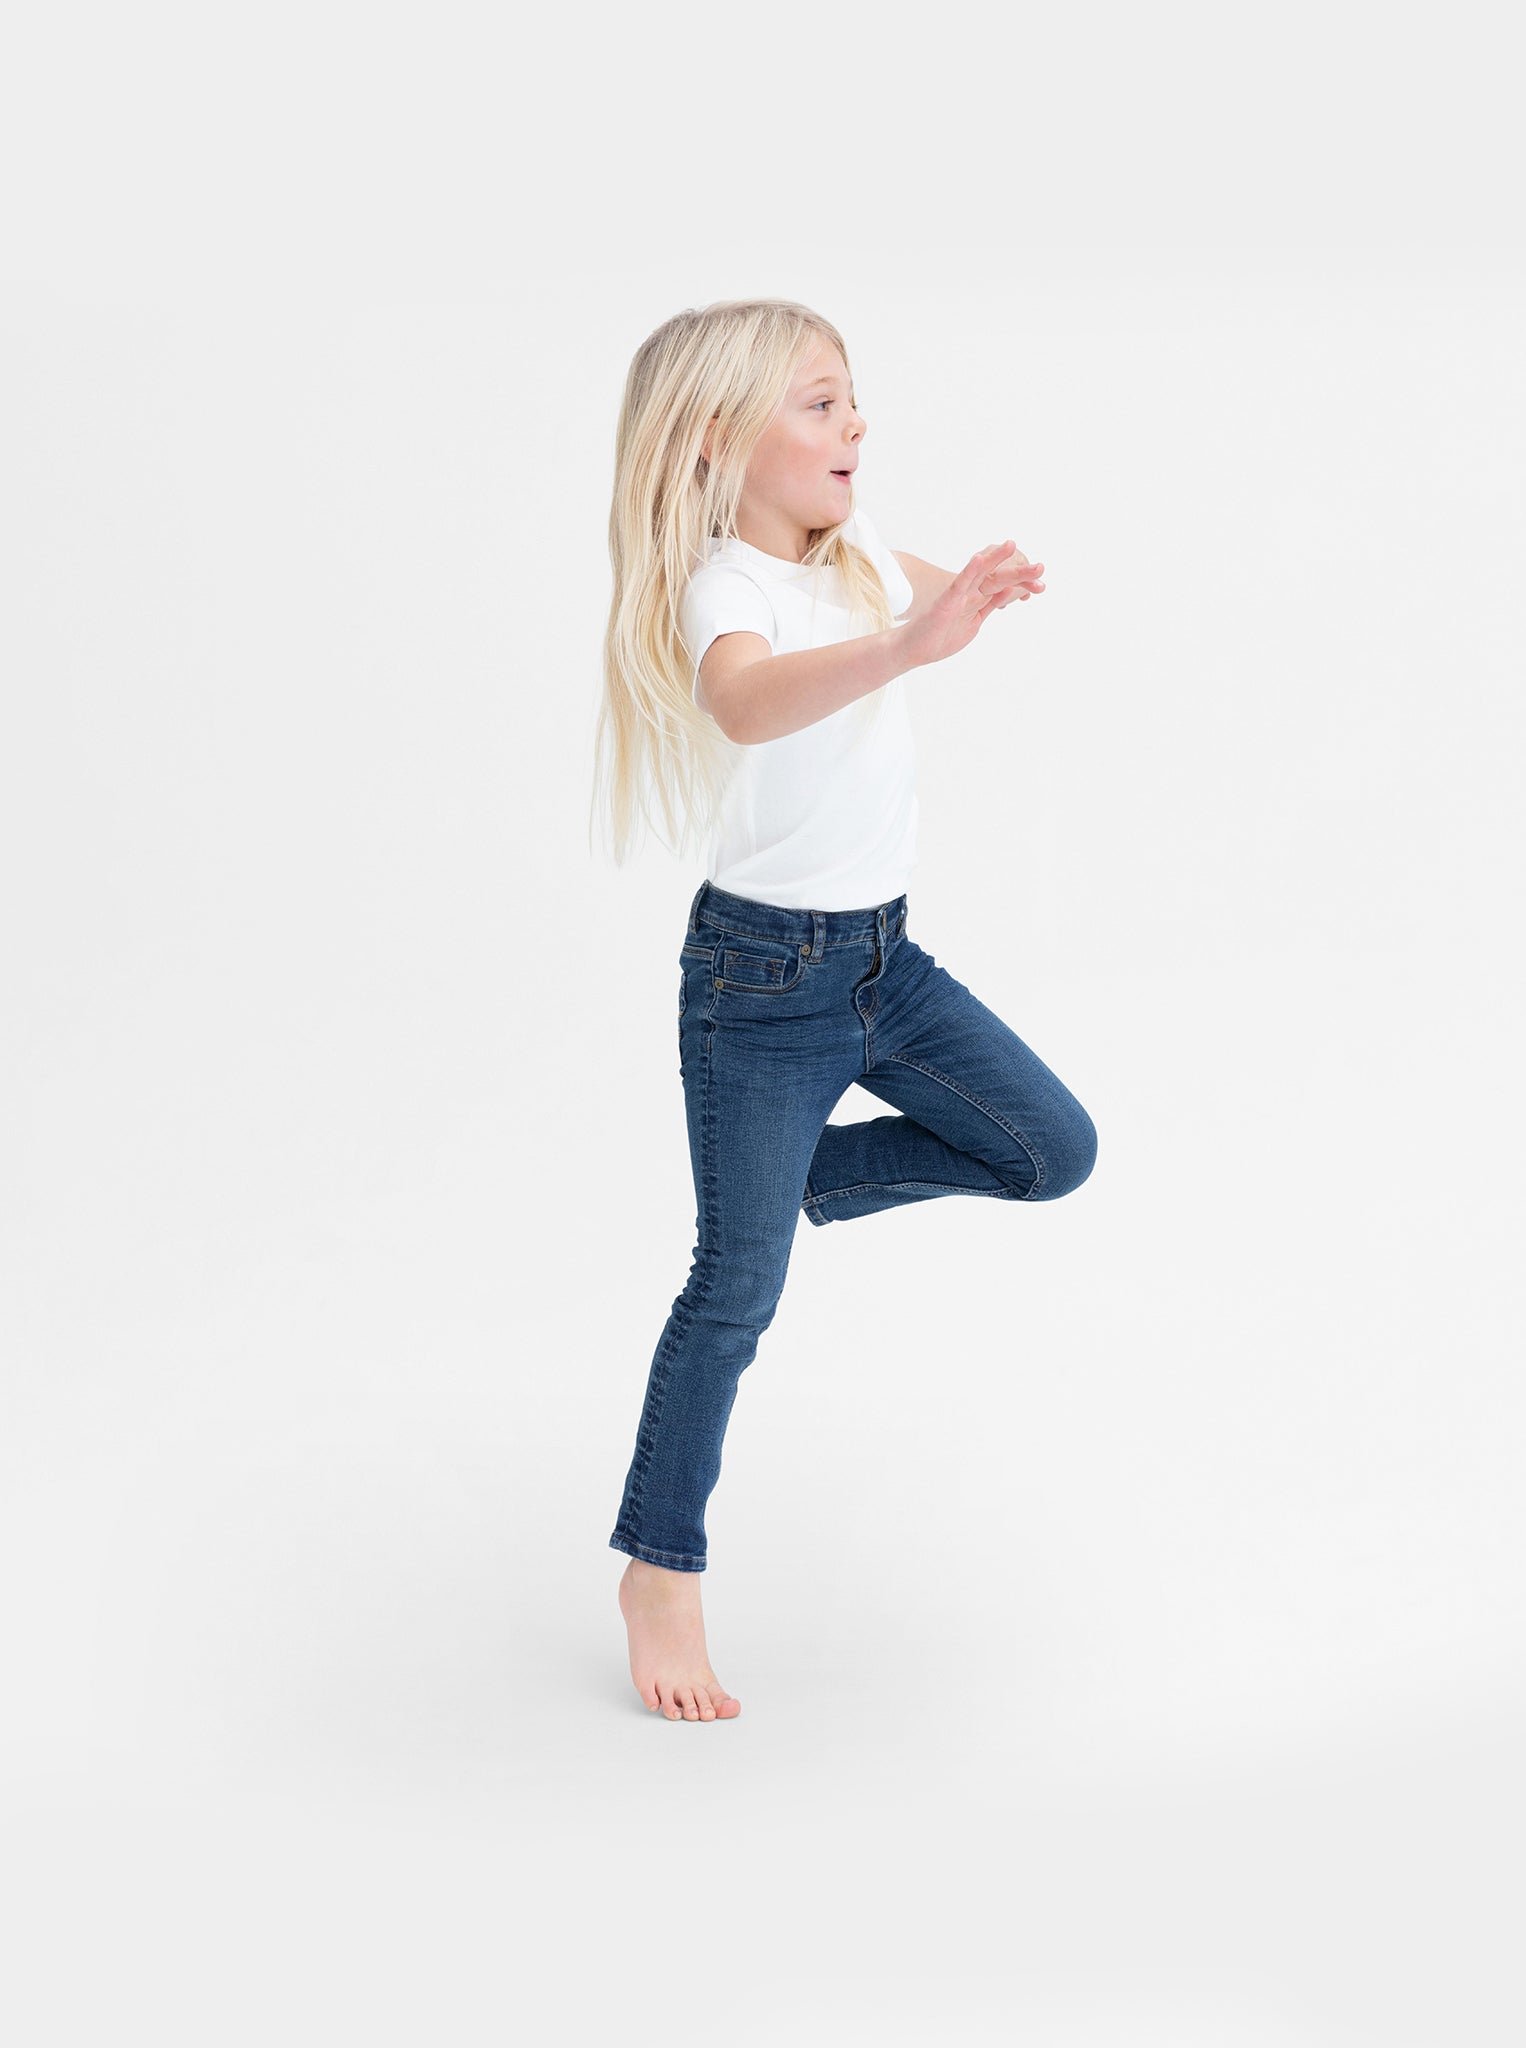 JESSIE - Super Slim Fit Kids Jeans